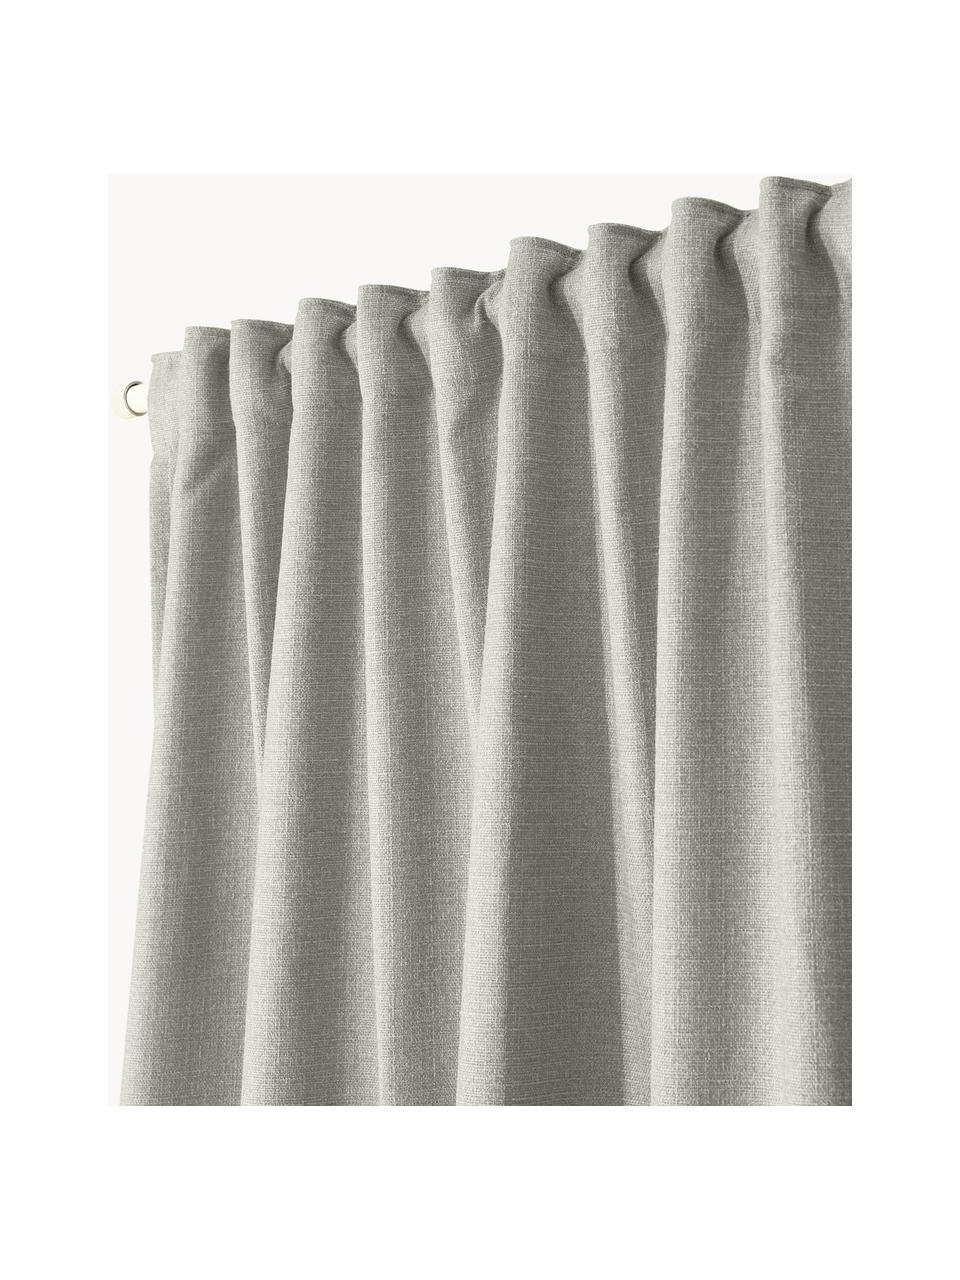 Ondoorzichtig gordijn Jensen met multiband, 2 stuks, 95% polyester, 5% nylon, Lichtgrijs, B 130 x L 260 cm